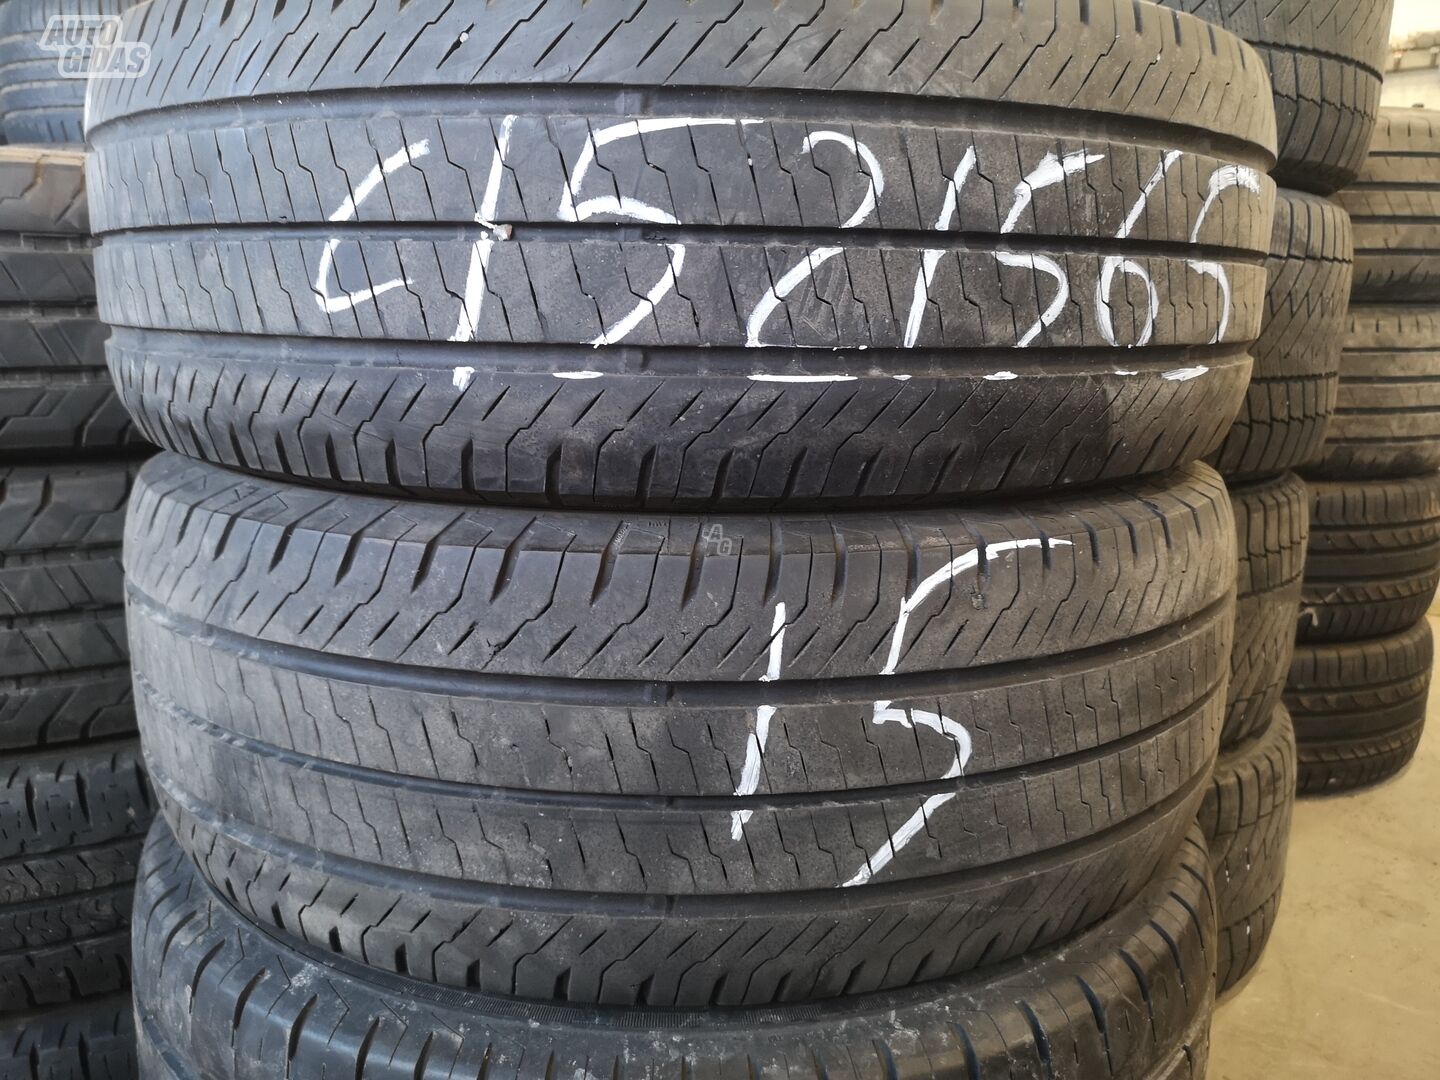 R15C summer tyres passanger car